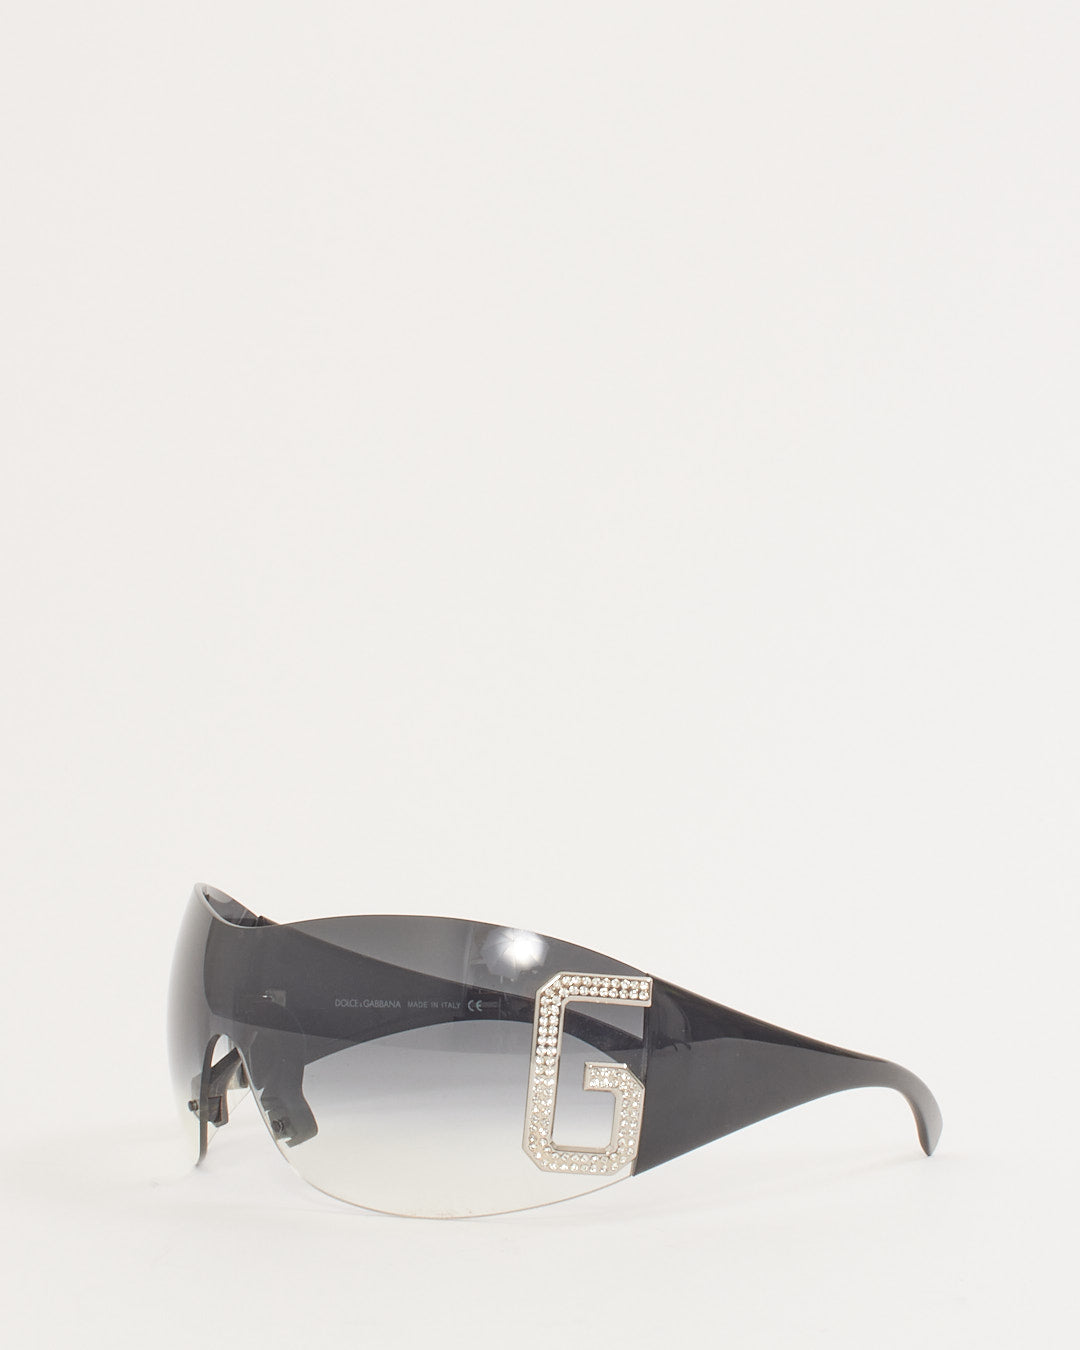 Dolce & Gabbana Black Swarovski Crystal D DG 893S 338 Shield Sunglasses